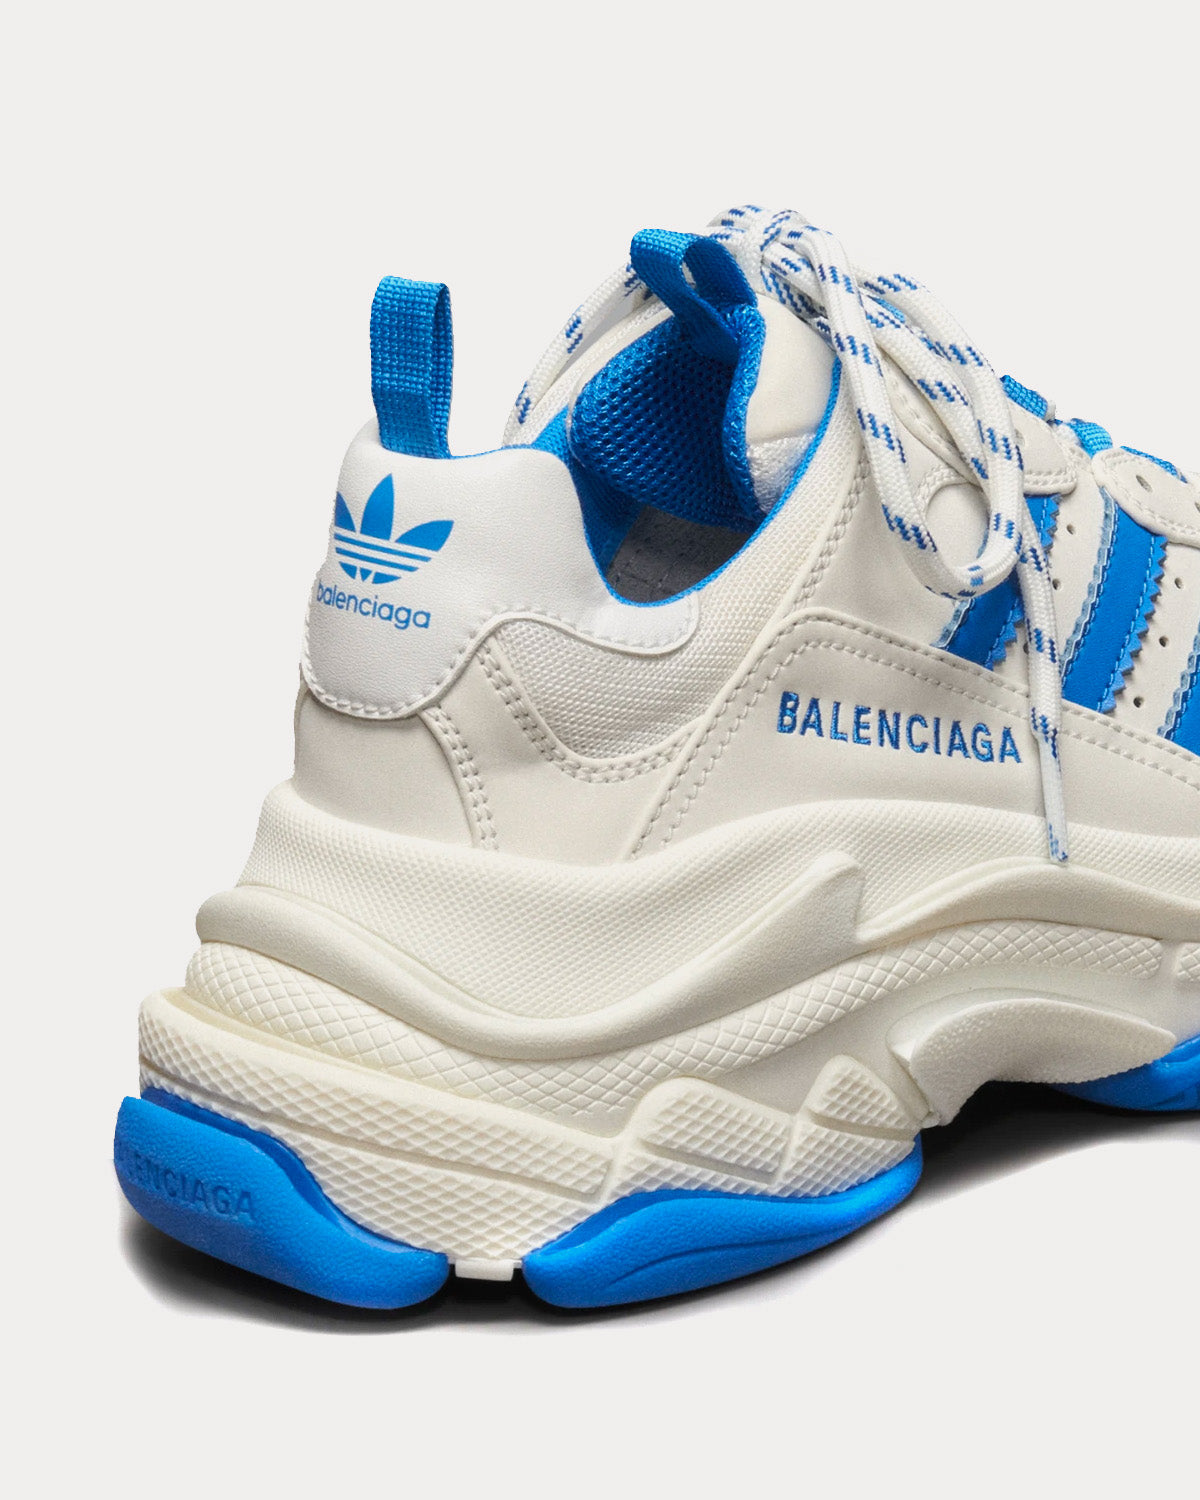 Balenciaga x Adidas - Triple S White / White / Blue Low Top Sneakers